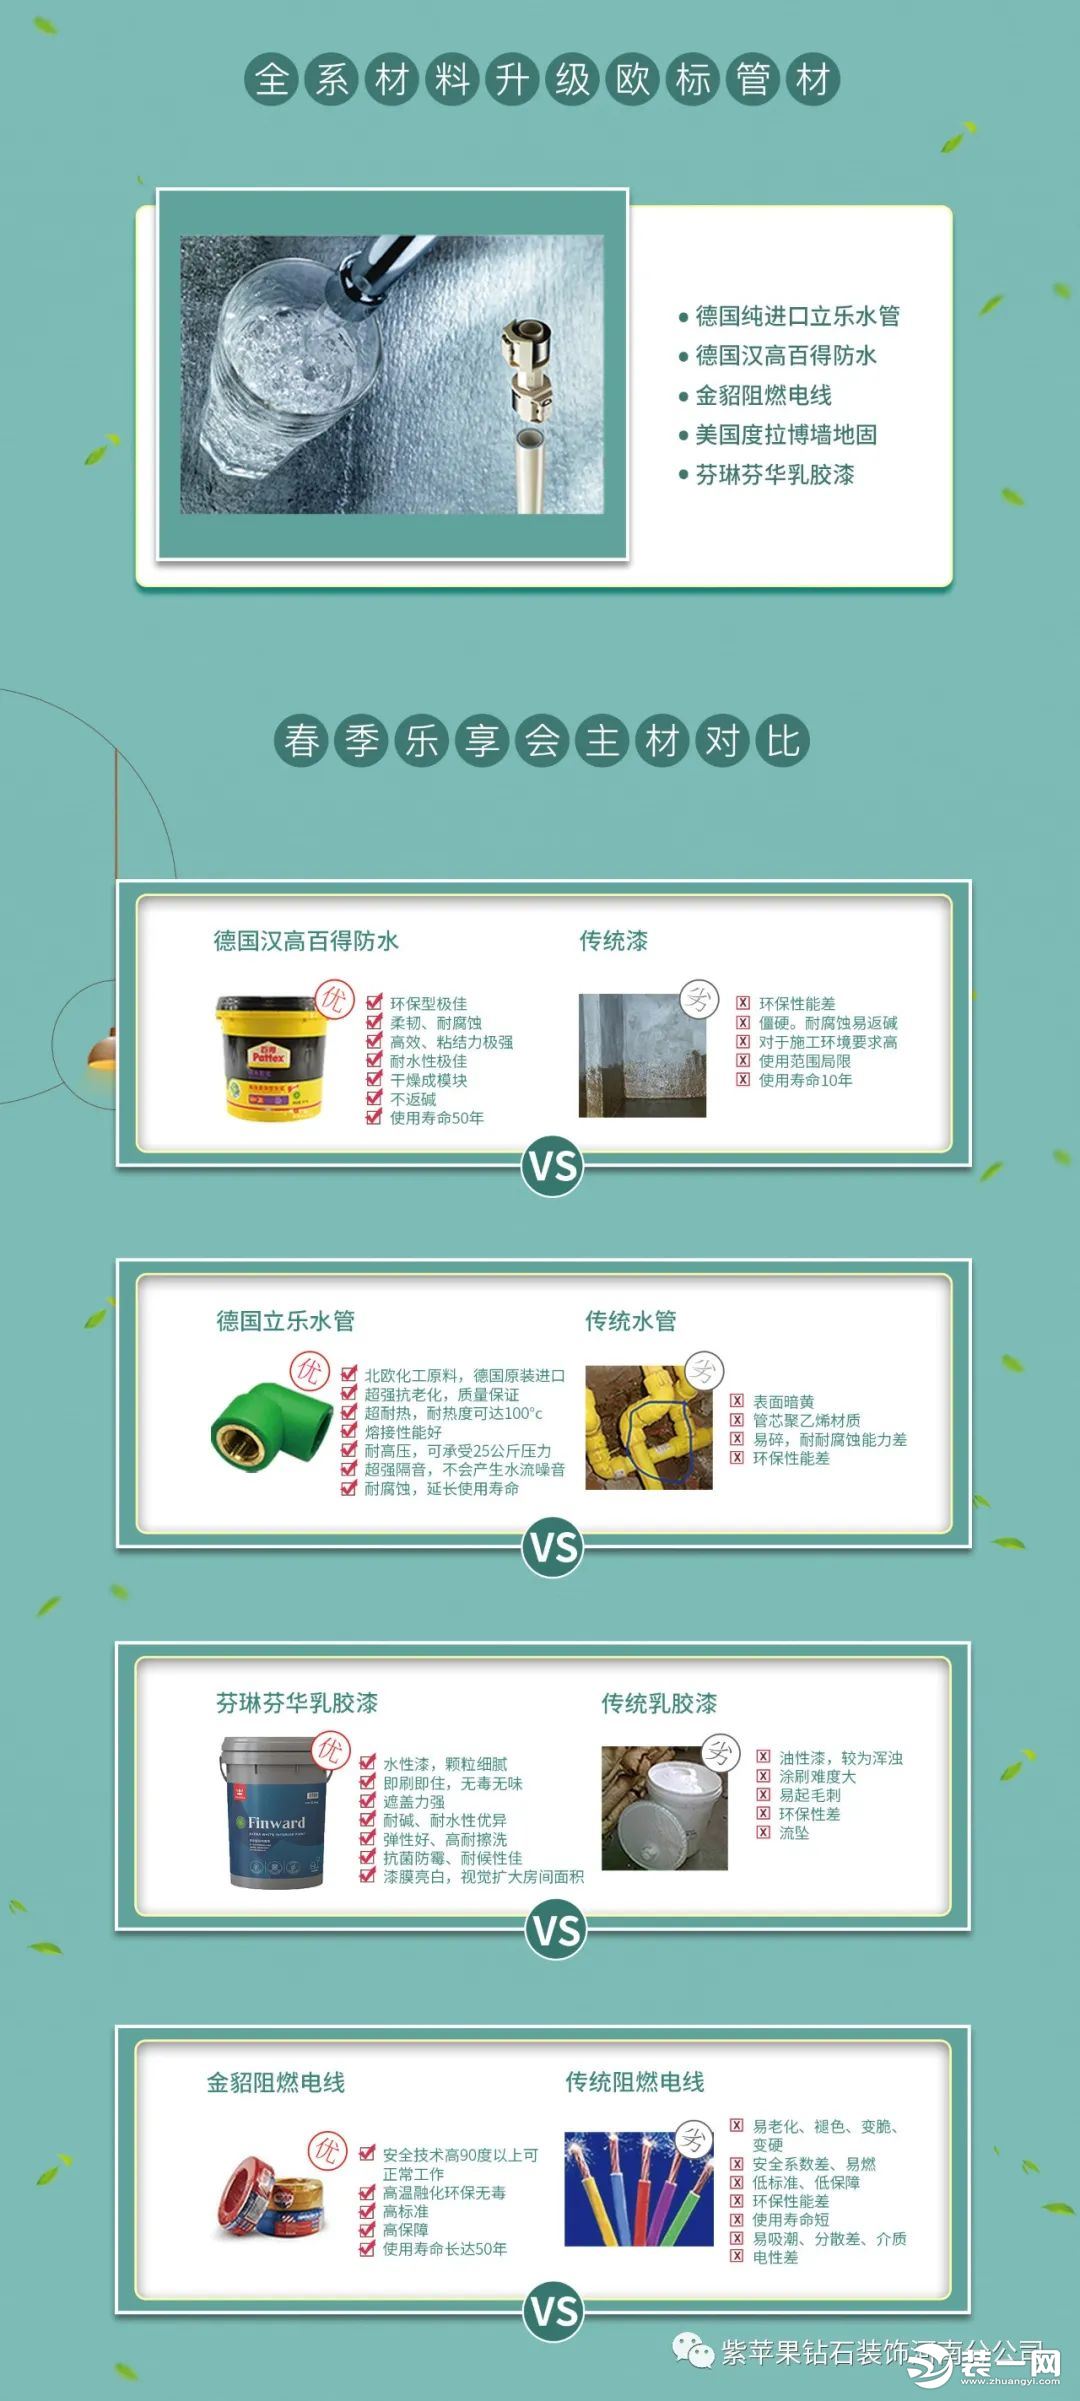 郑州紫苹果钻石装饰公司活动图